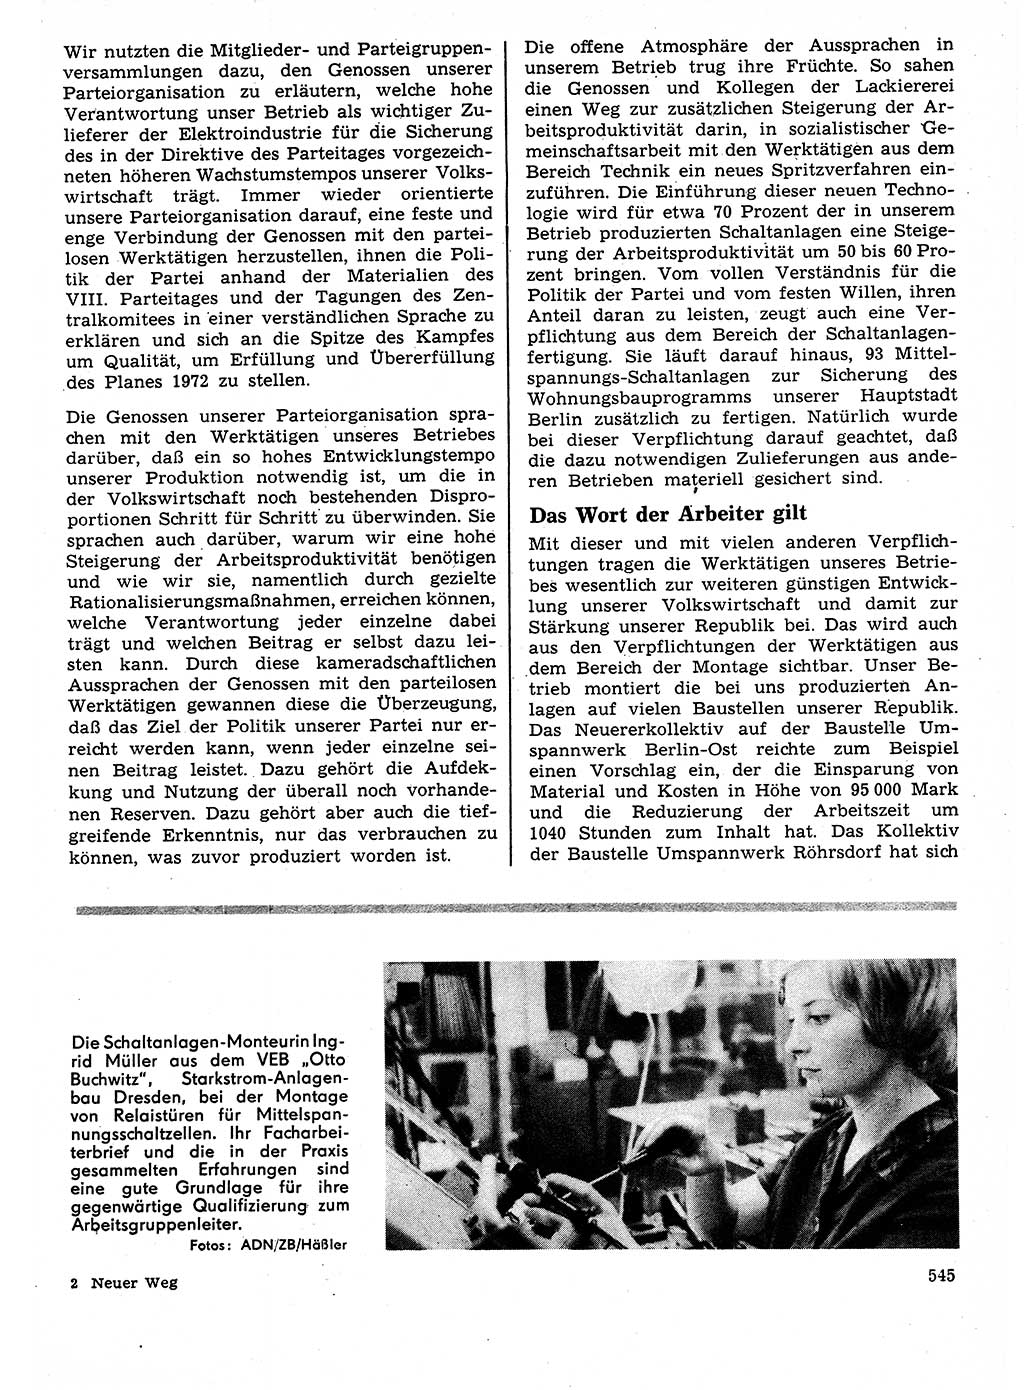 Neuer Weg (NW), Organ des Zentralkomitees (ZK) der SED (Sozialistische Einheitspartei Deutschlands) für Fragen des Parteilebens, 27. Jahrgang [Deutsche Demokratische Republik (DDR)] 1972, Seite 545 (NW ZK SED DDR 1972, S. 545)